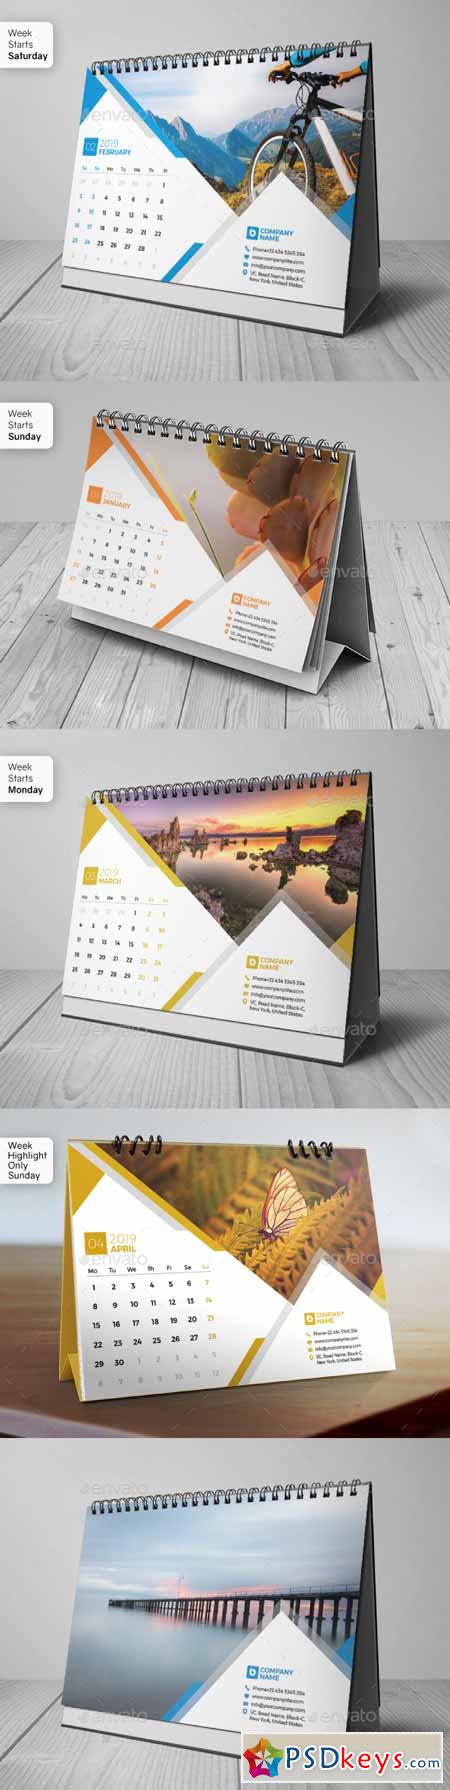 Desk Calendar 2019 22825148